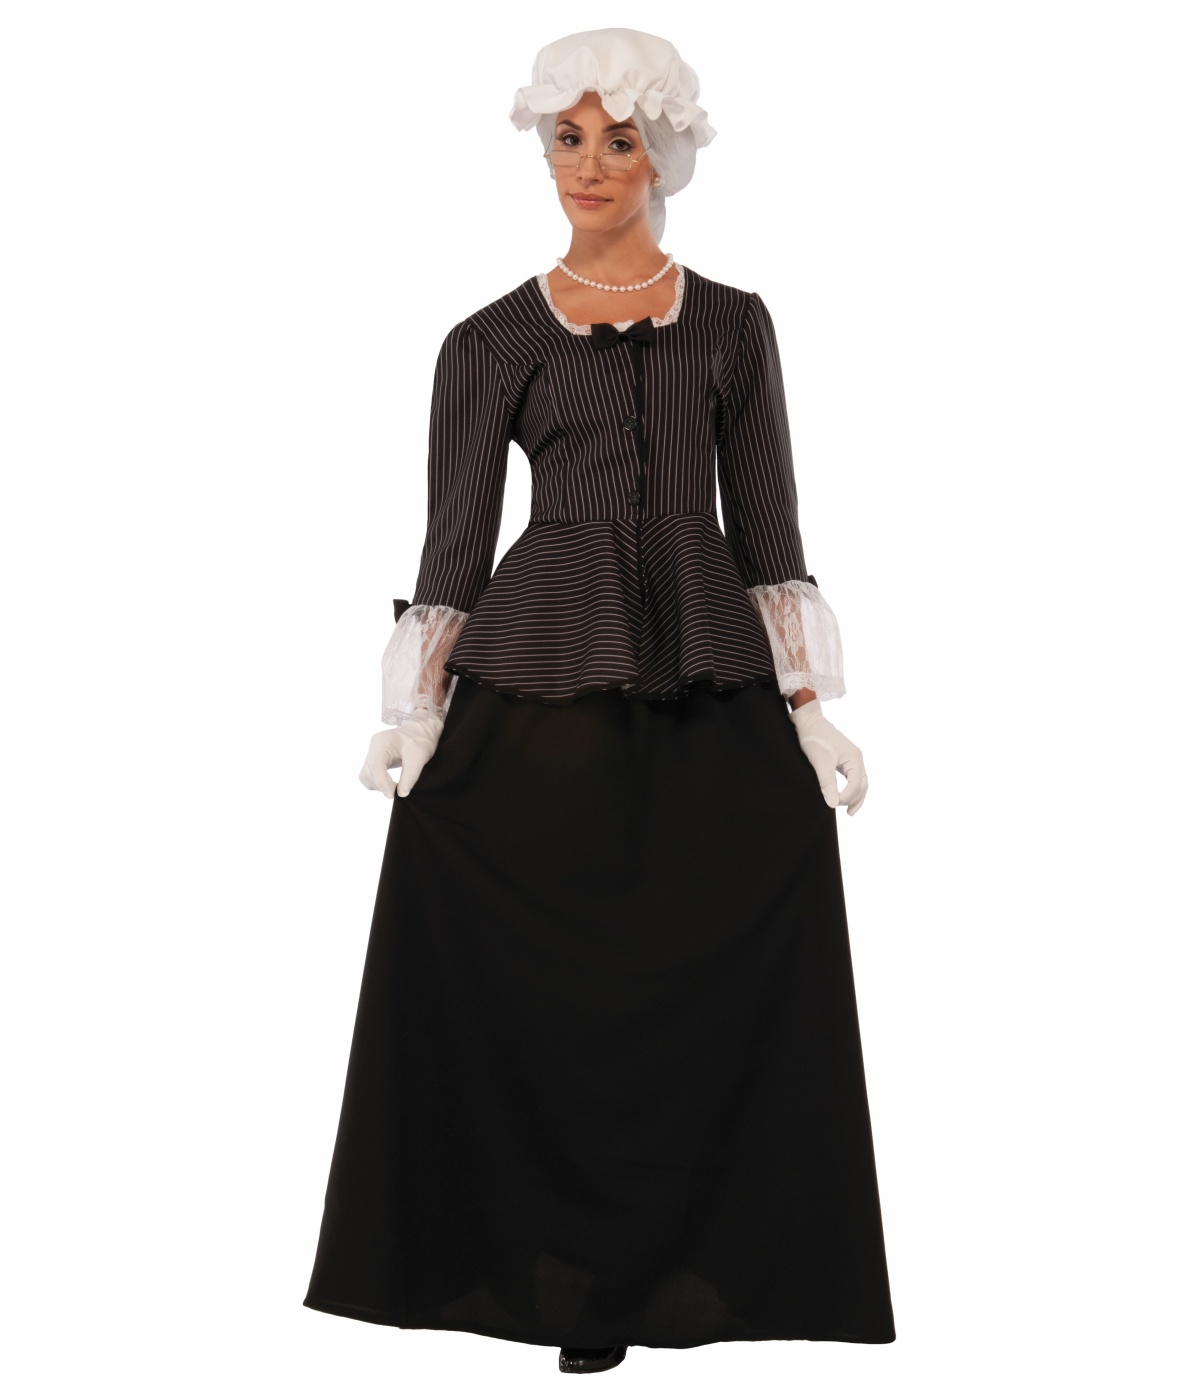  Lady Martha Washington Costume